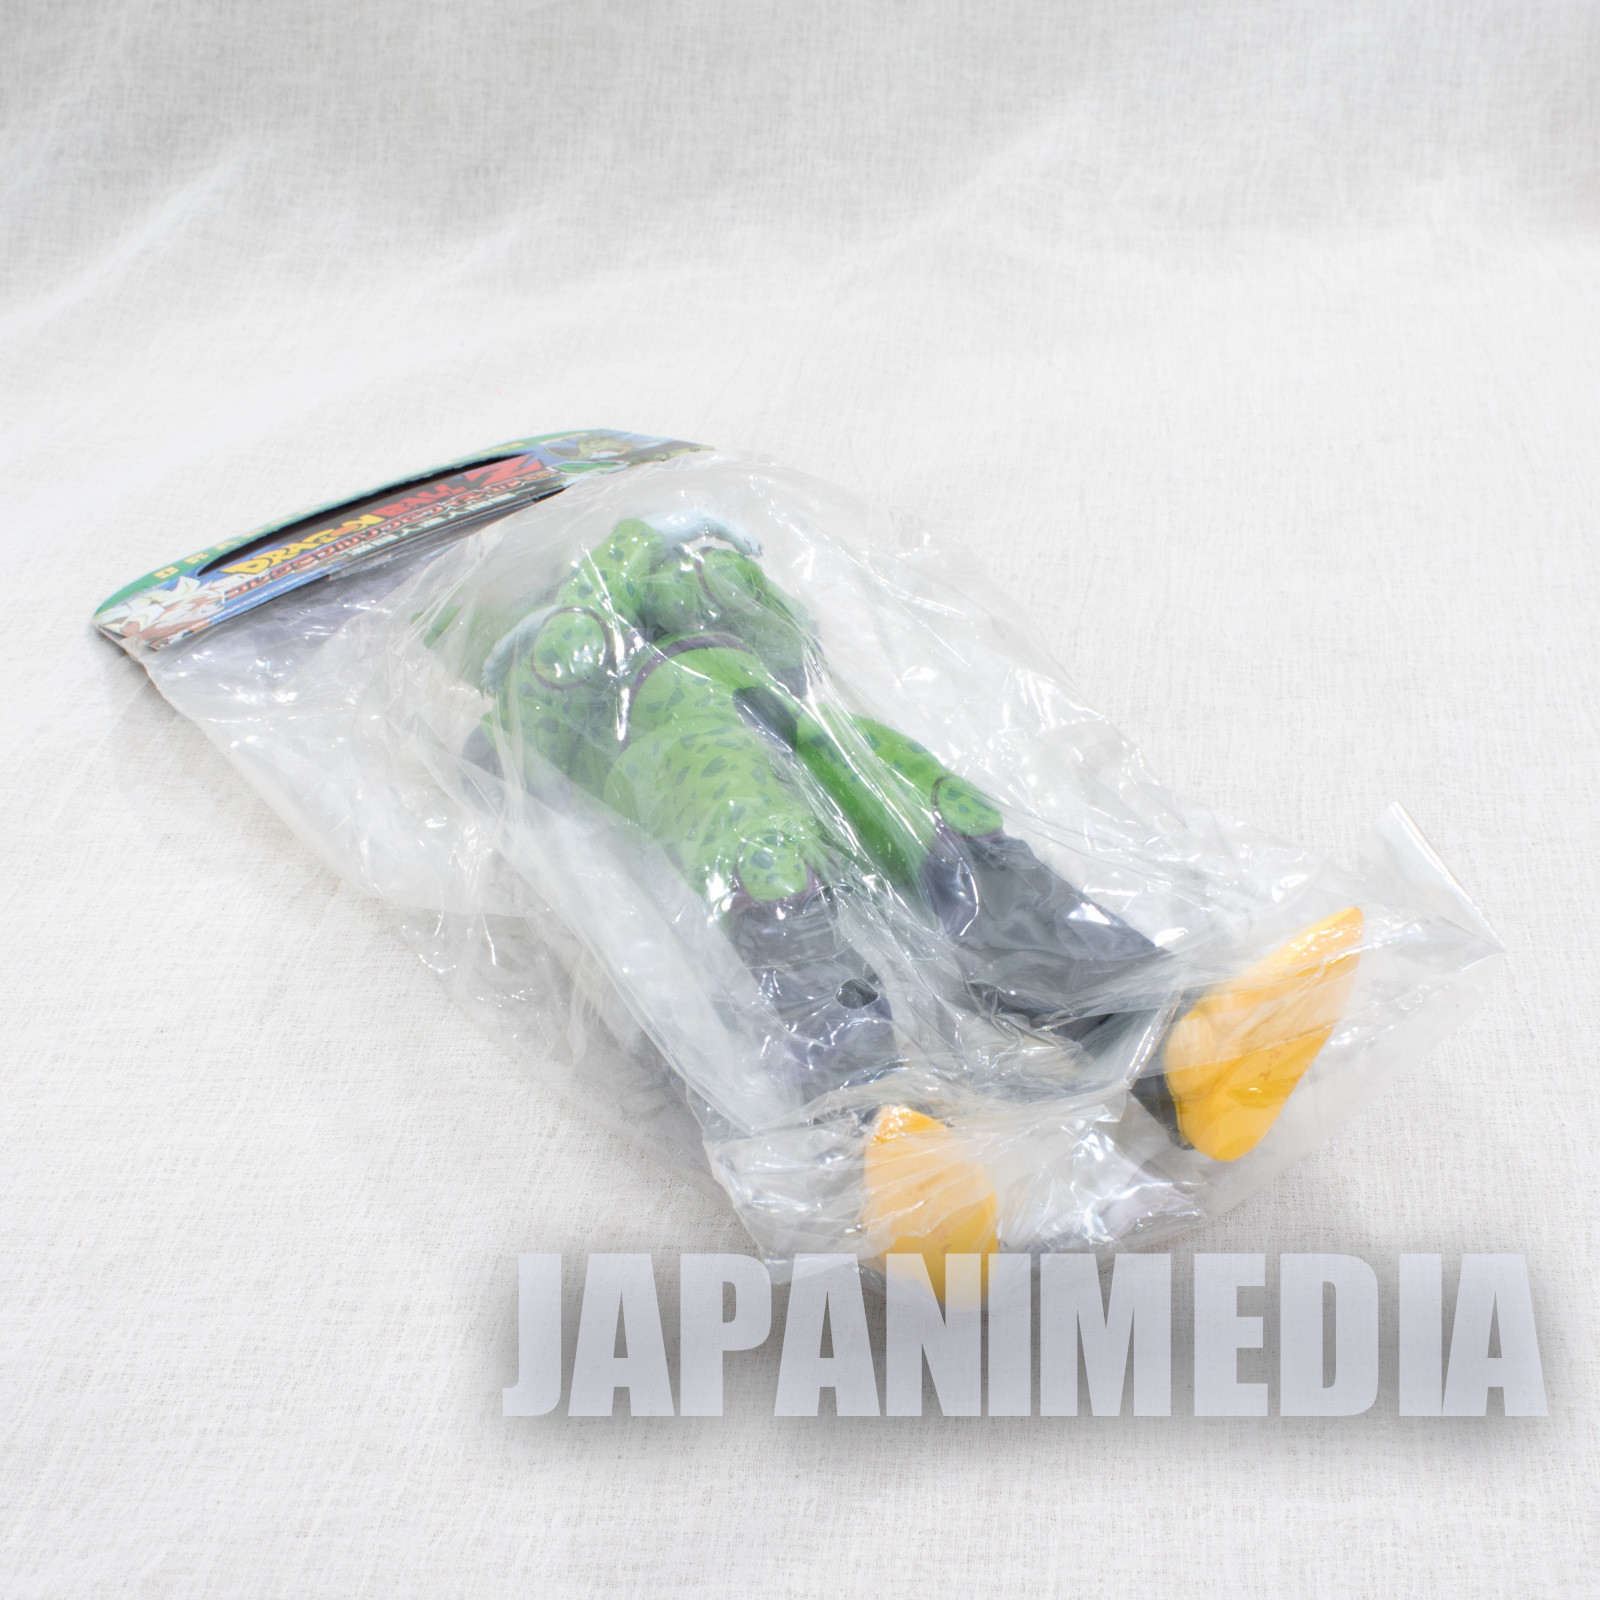 Dragon Ball Z Cell Final Form Collectible Sofubi Figure 4 Banpresto JAPAN ANIME